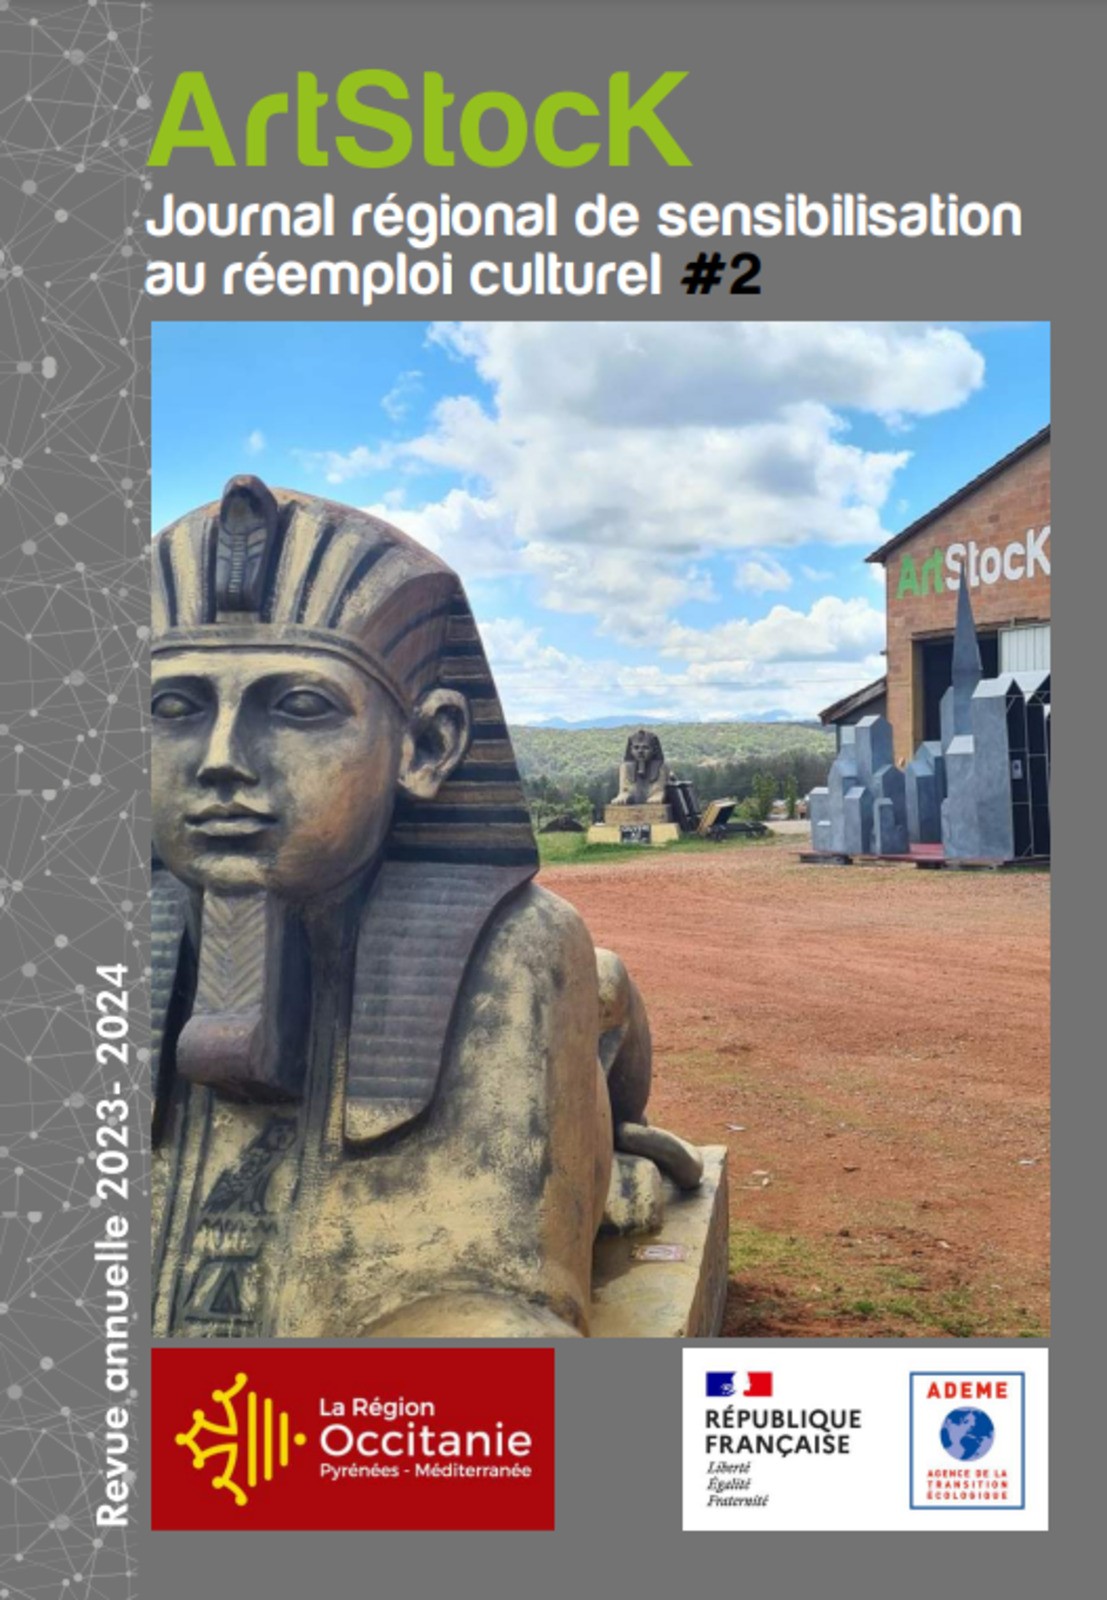 Le Journal régional de sensibilisation au réemploi culturel #2 d'ArtStock vient de sortir ! 